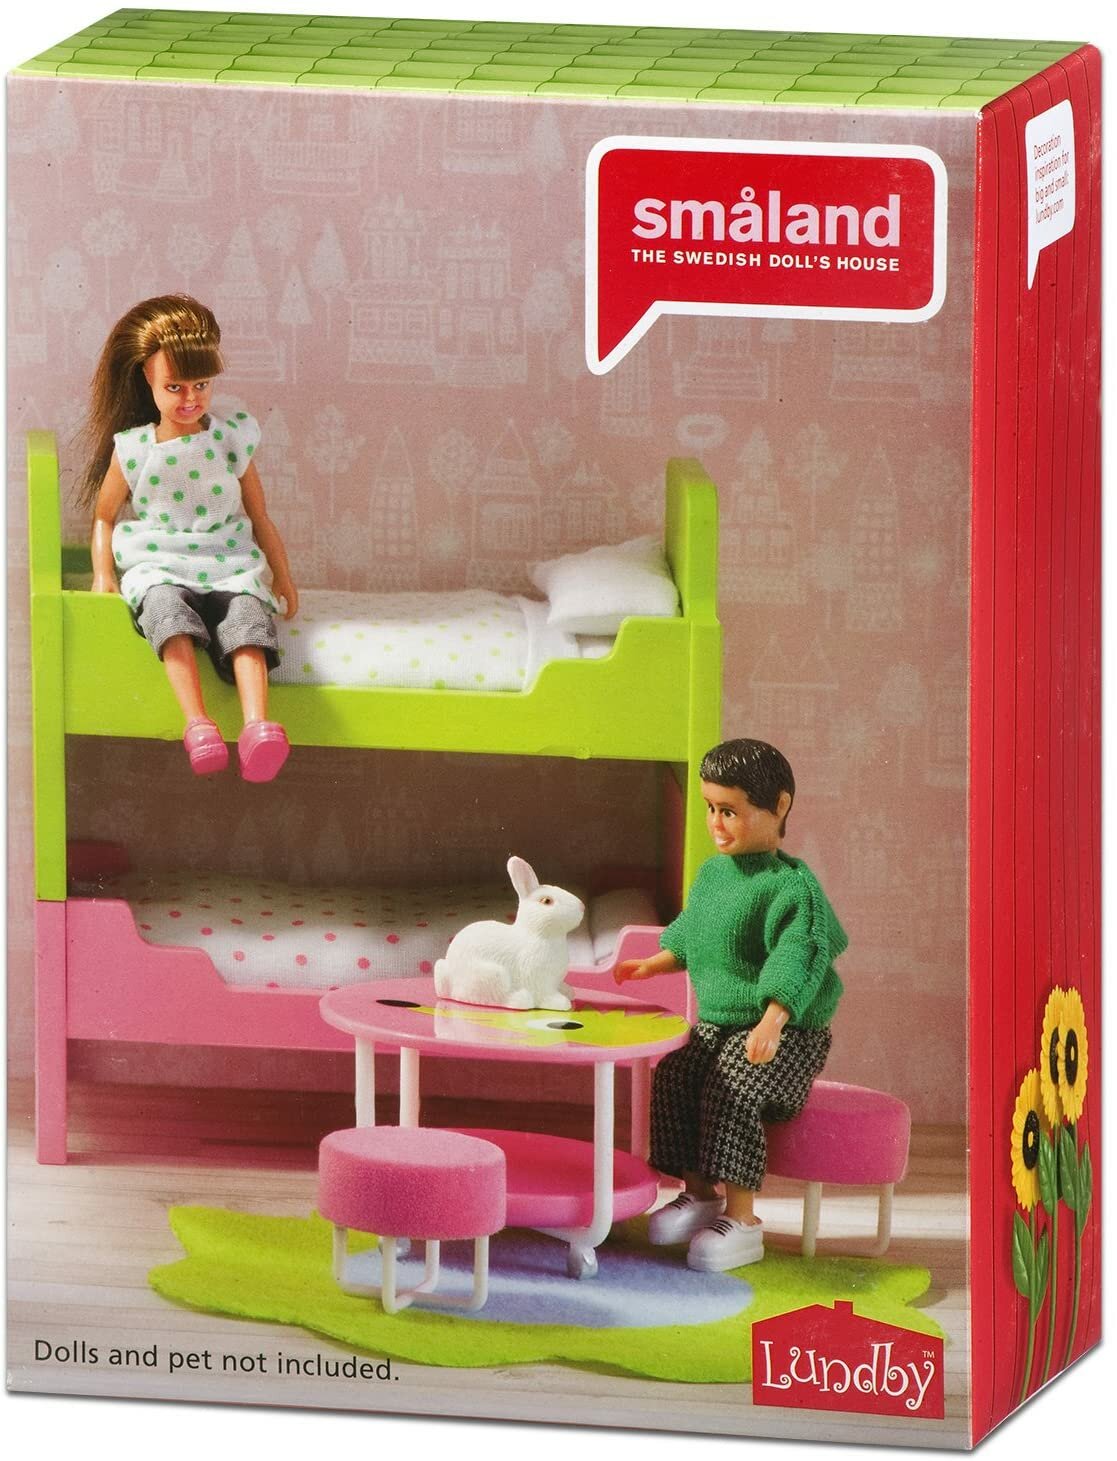 Мебель для домика Lundby Смоланд Детская с 2 кроватями - фото №5